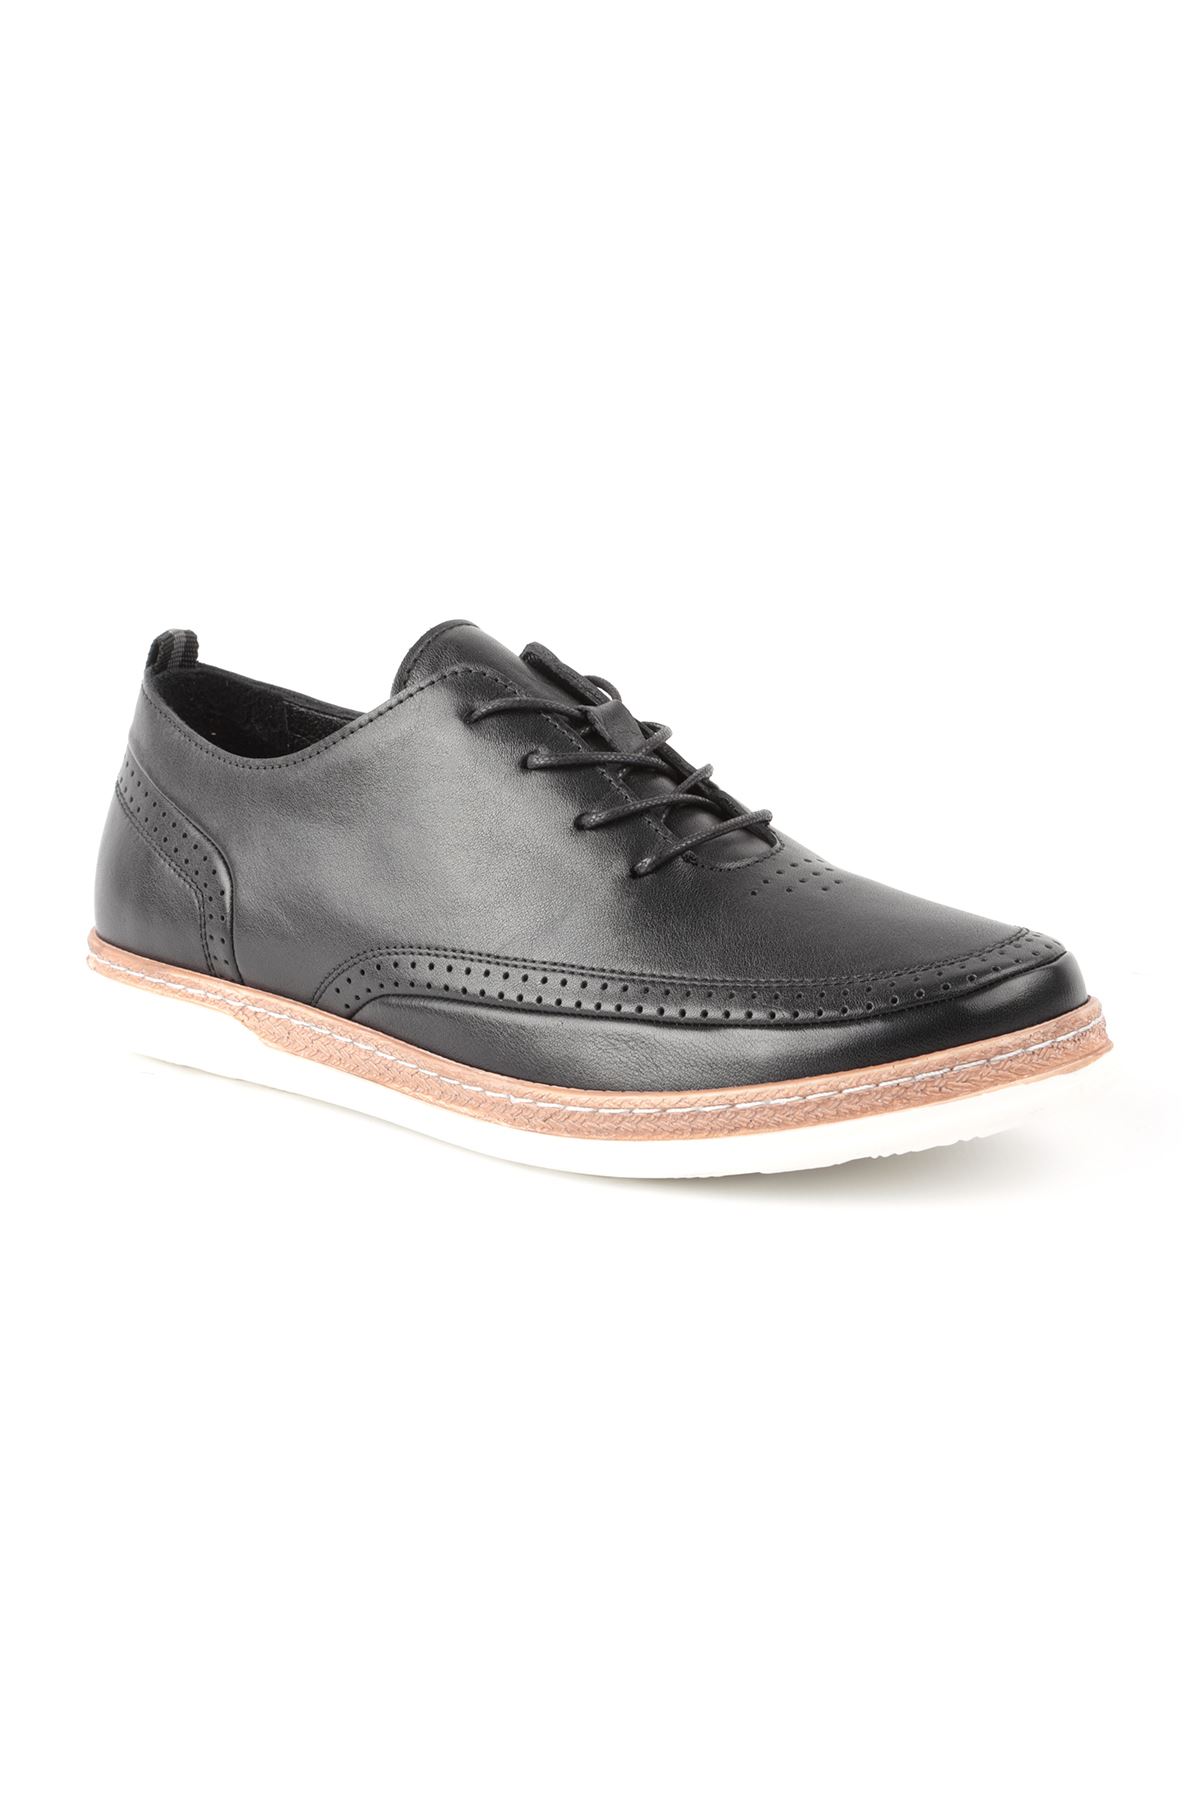 Libero L3633 Siyah Casual Erkek Ayakkabı 